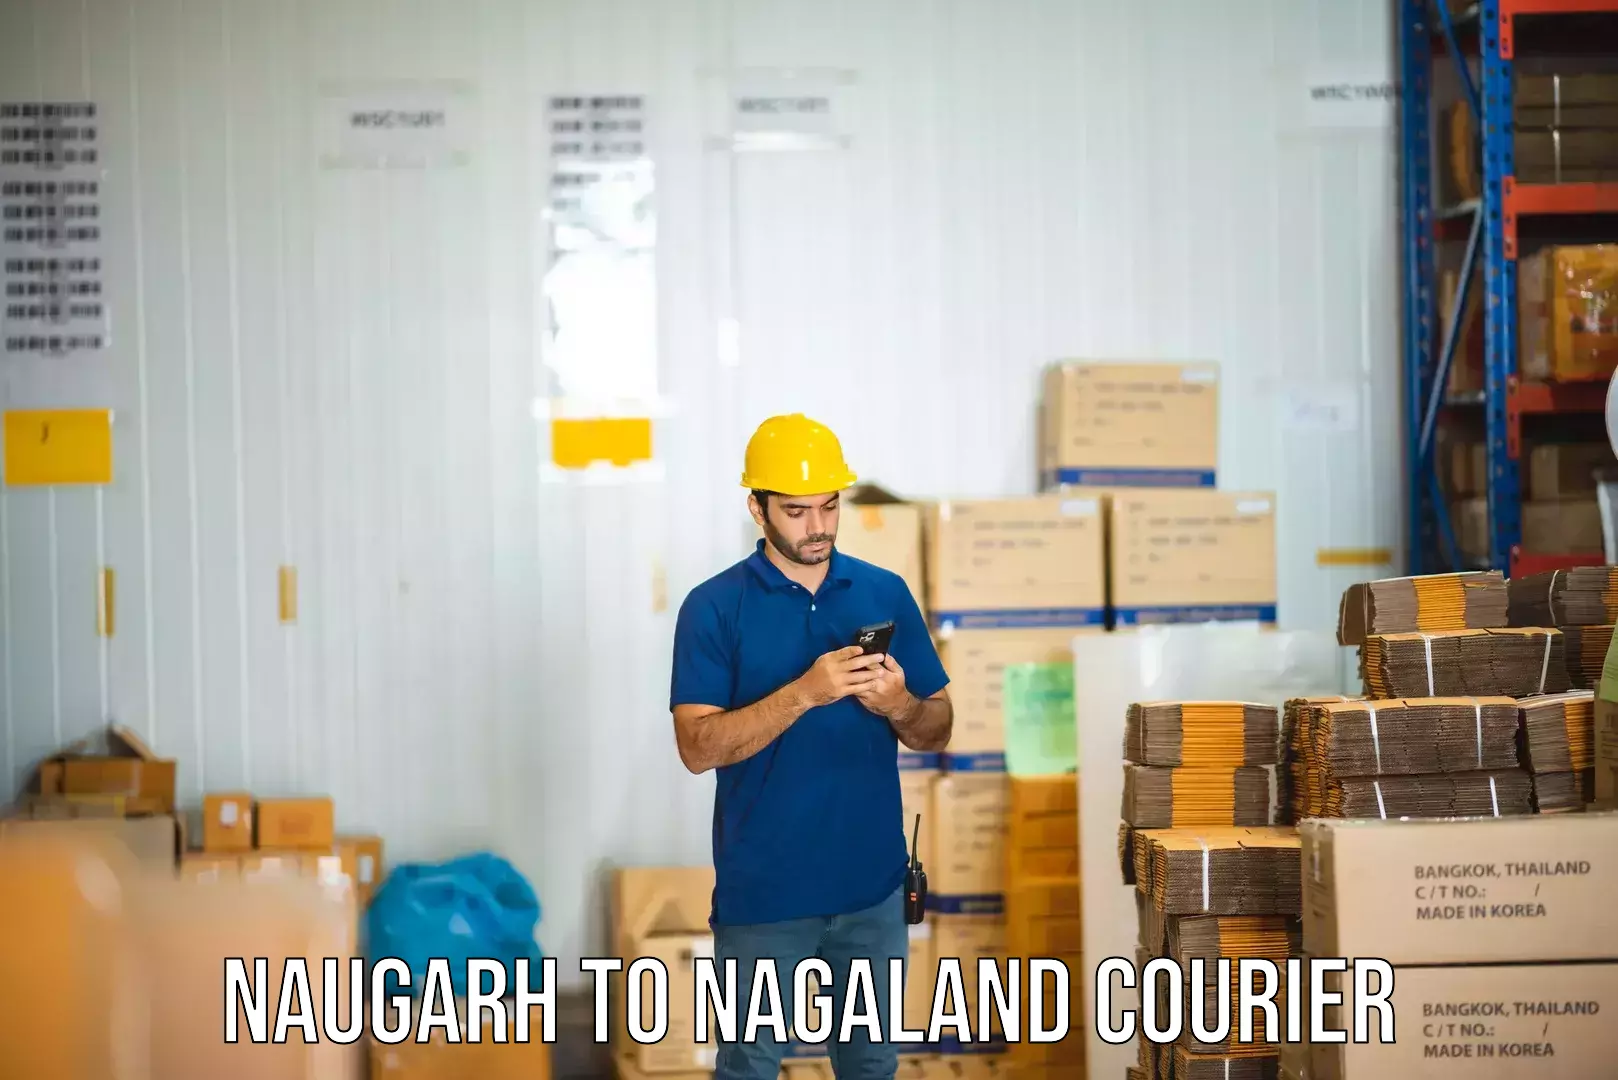 Cross-border shipping Naugarh to NIT Nagaland